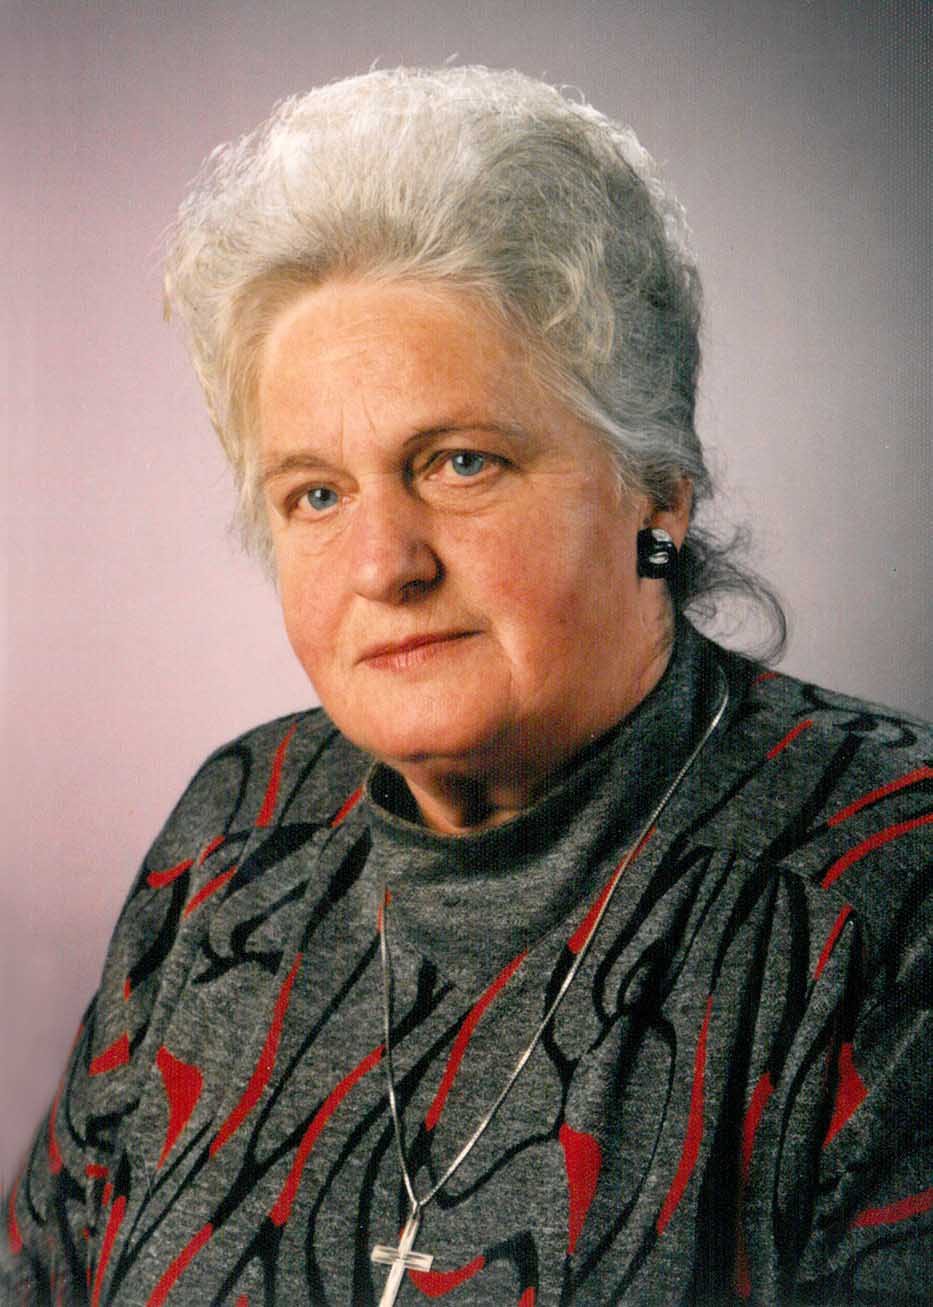 Johanna Windbichler (87)